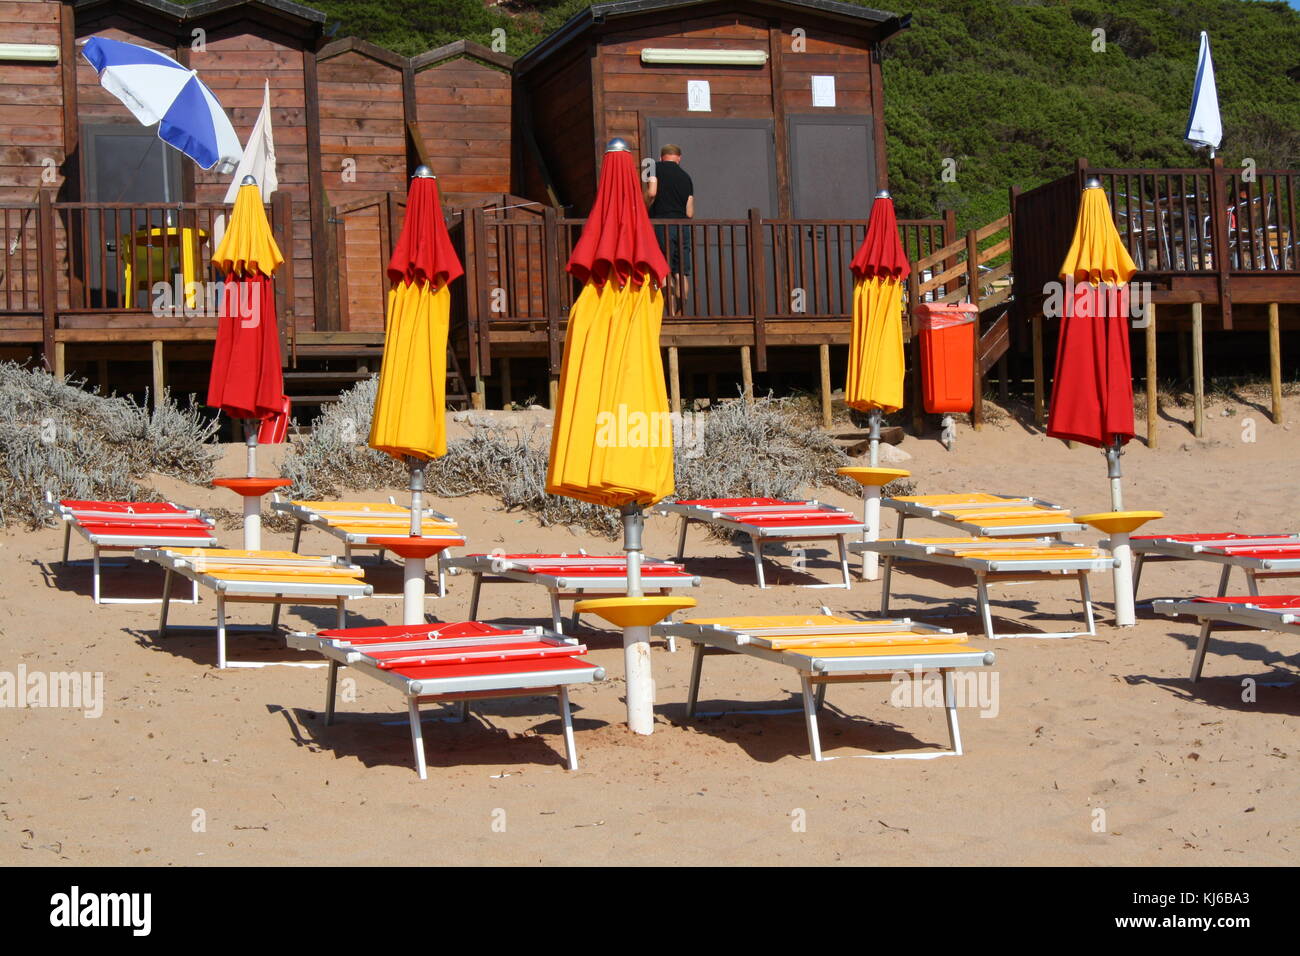 Chiuso ombrelloni e lettini su una spiaggia deserta fuori stagione. Foto Stock